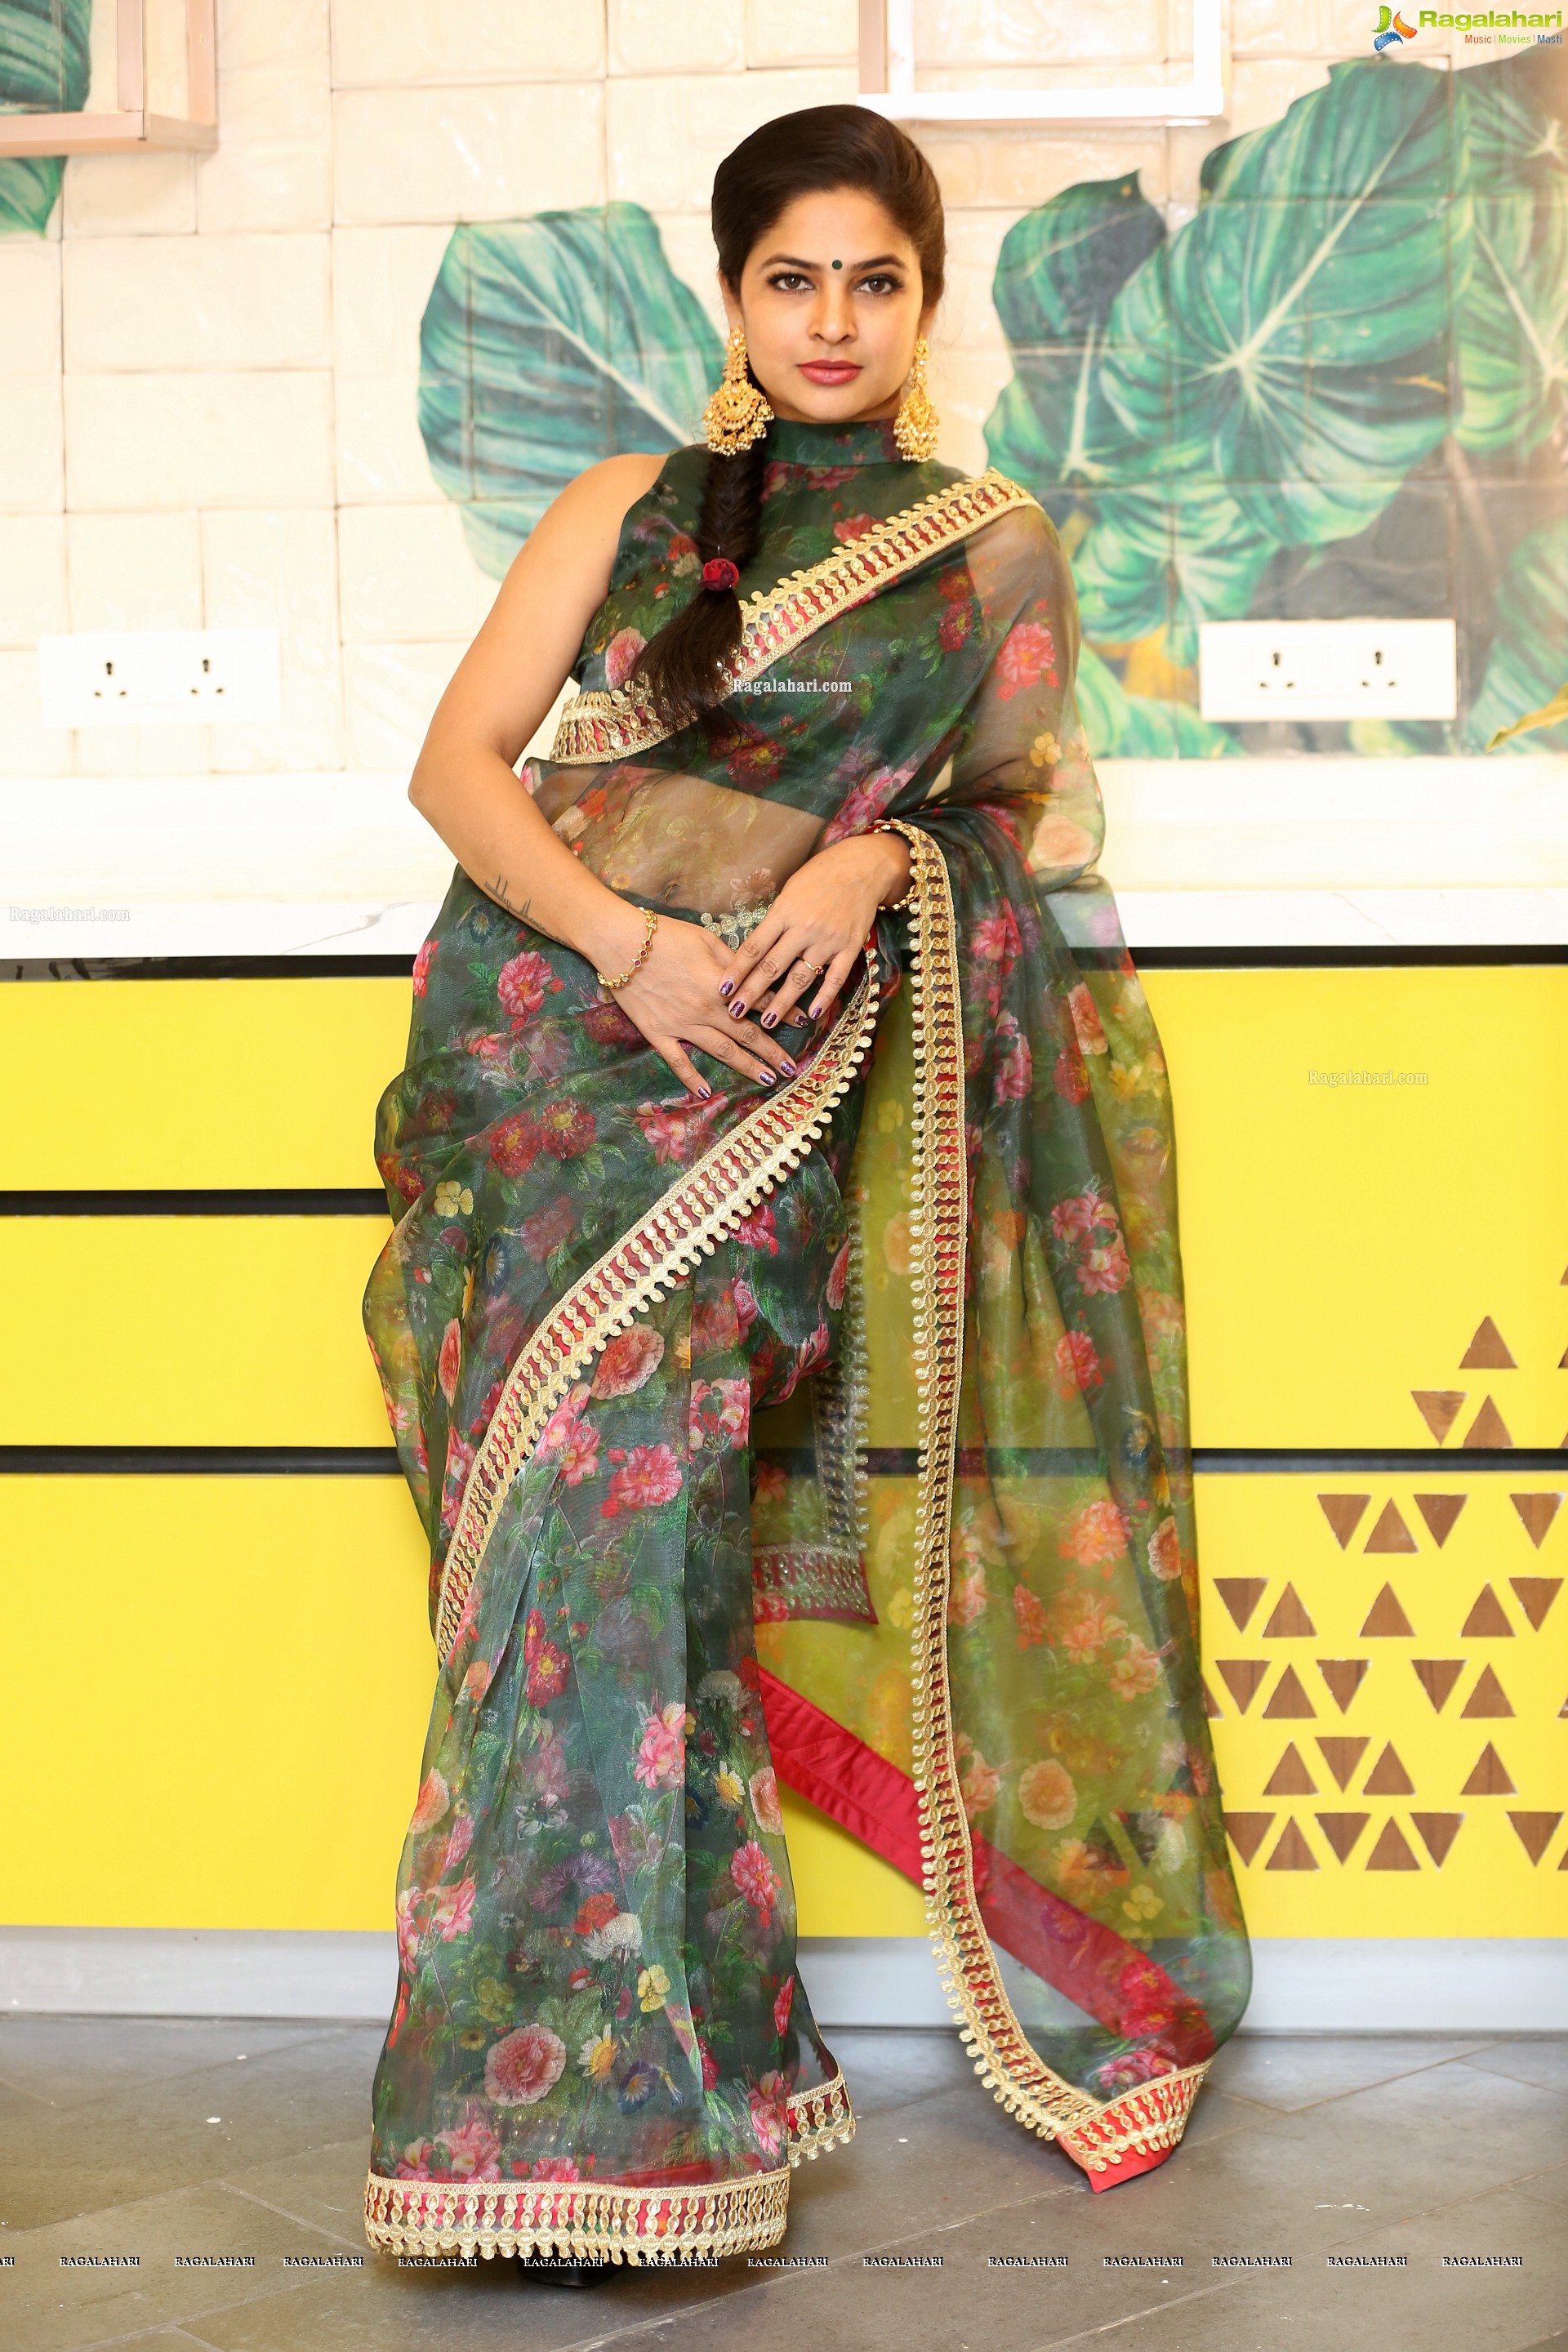 Madhumitha Sivabalaji at Tathasthu - For Living Solutions Launch at Kokapet